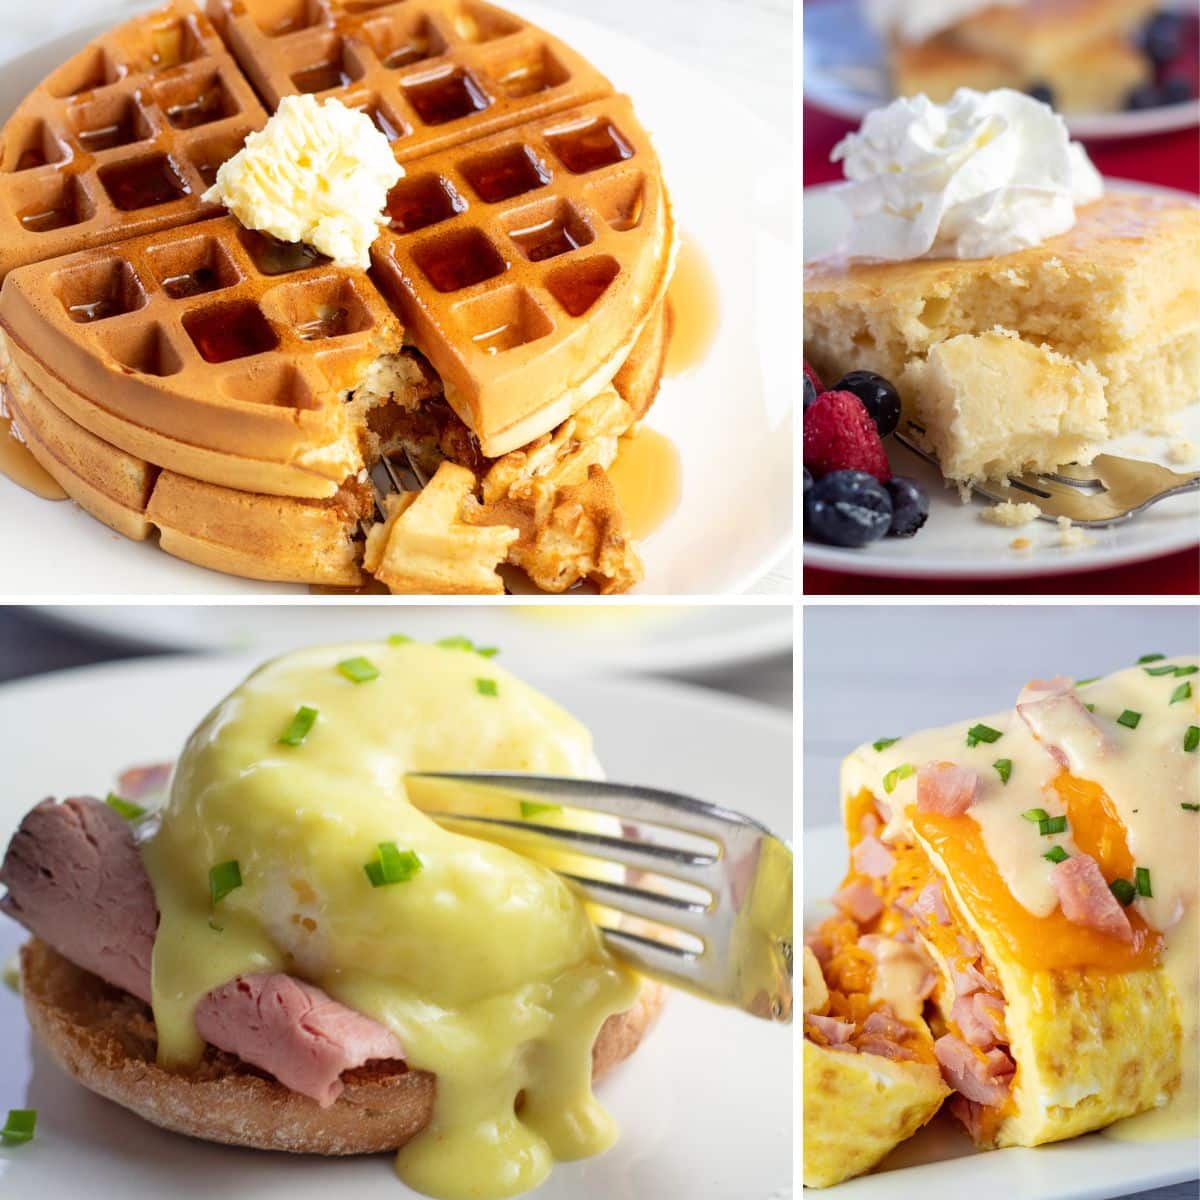 Un collage de recetas de brunch del Día de la Madre con 4 opciones de desayuno dulces y saladas en la foto.